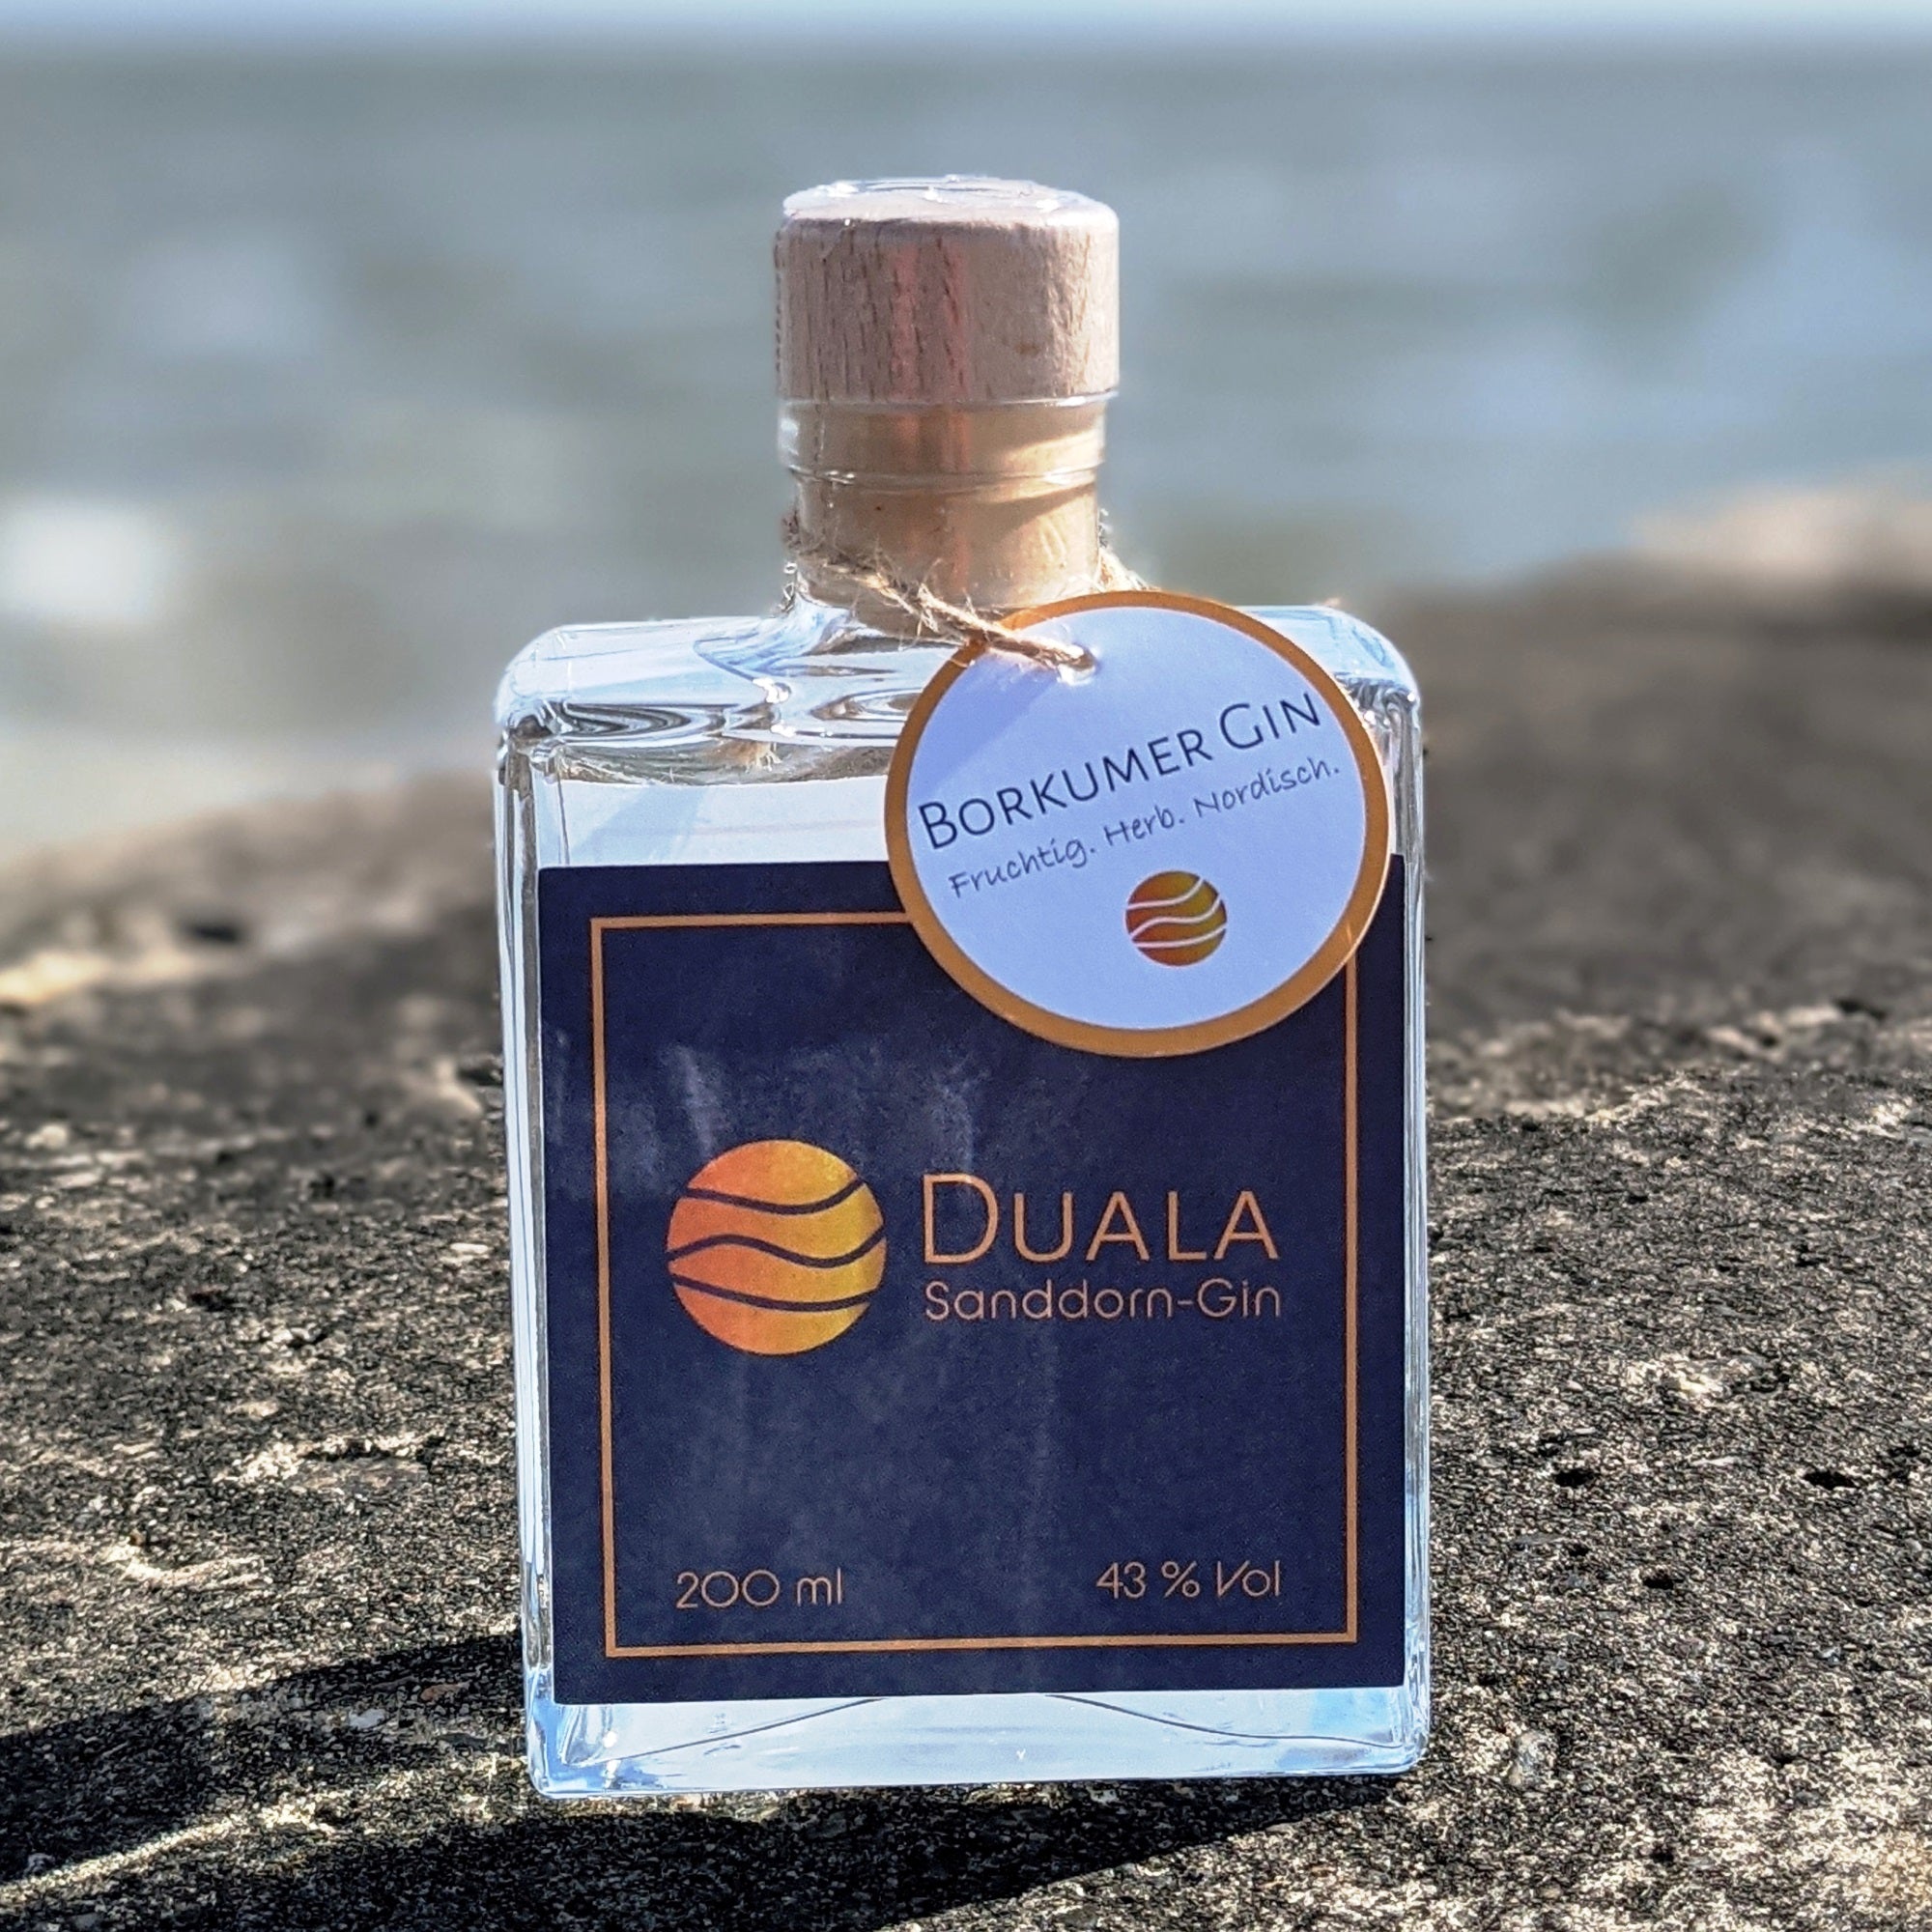 Duala Sanddorn-Gin 200ml